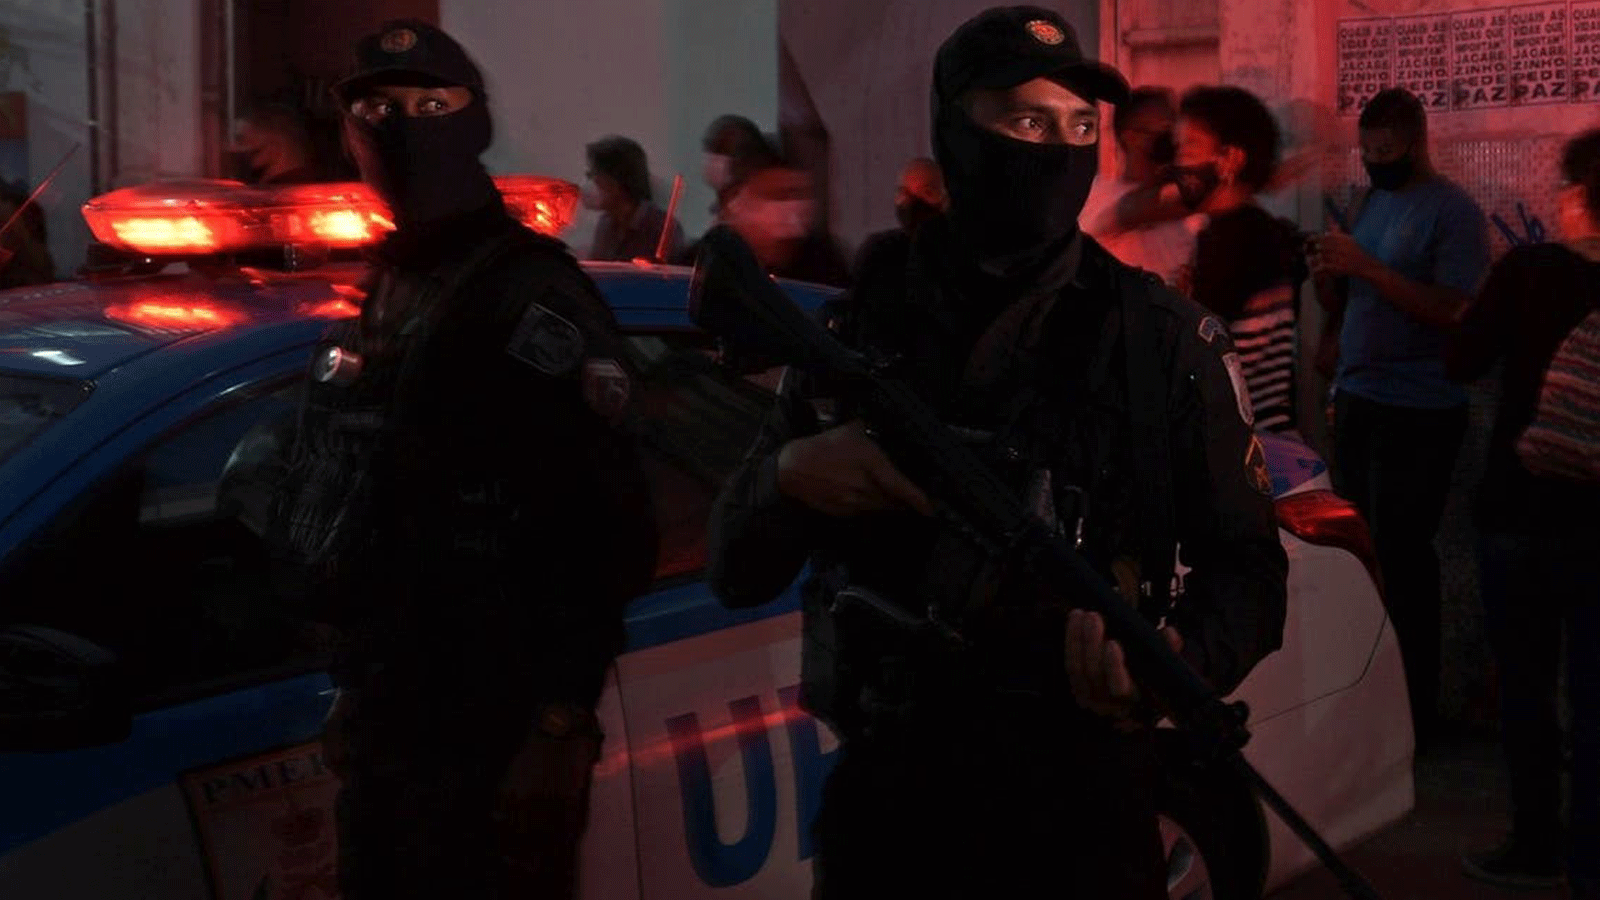 الشرطة تقف في نوبة حراسة خلال الاحتجاج الشعبي على عنف الشرطة في جاكاريزينيو فافيلا، في ريو دي جانيرو، البرازيل. 7 أيار/مايو 2021